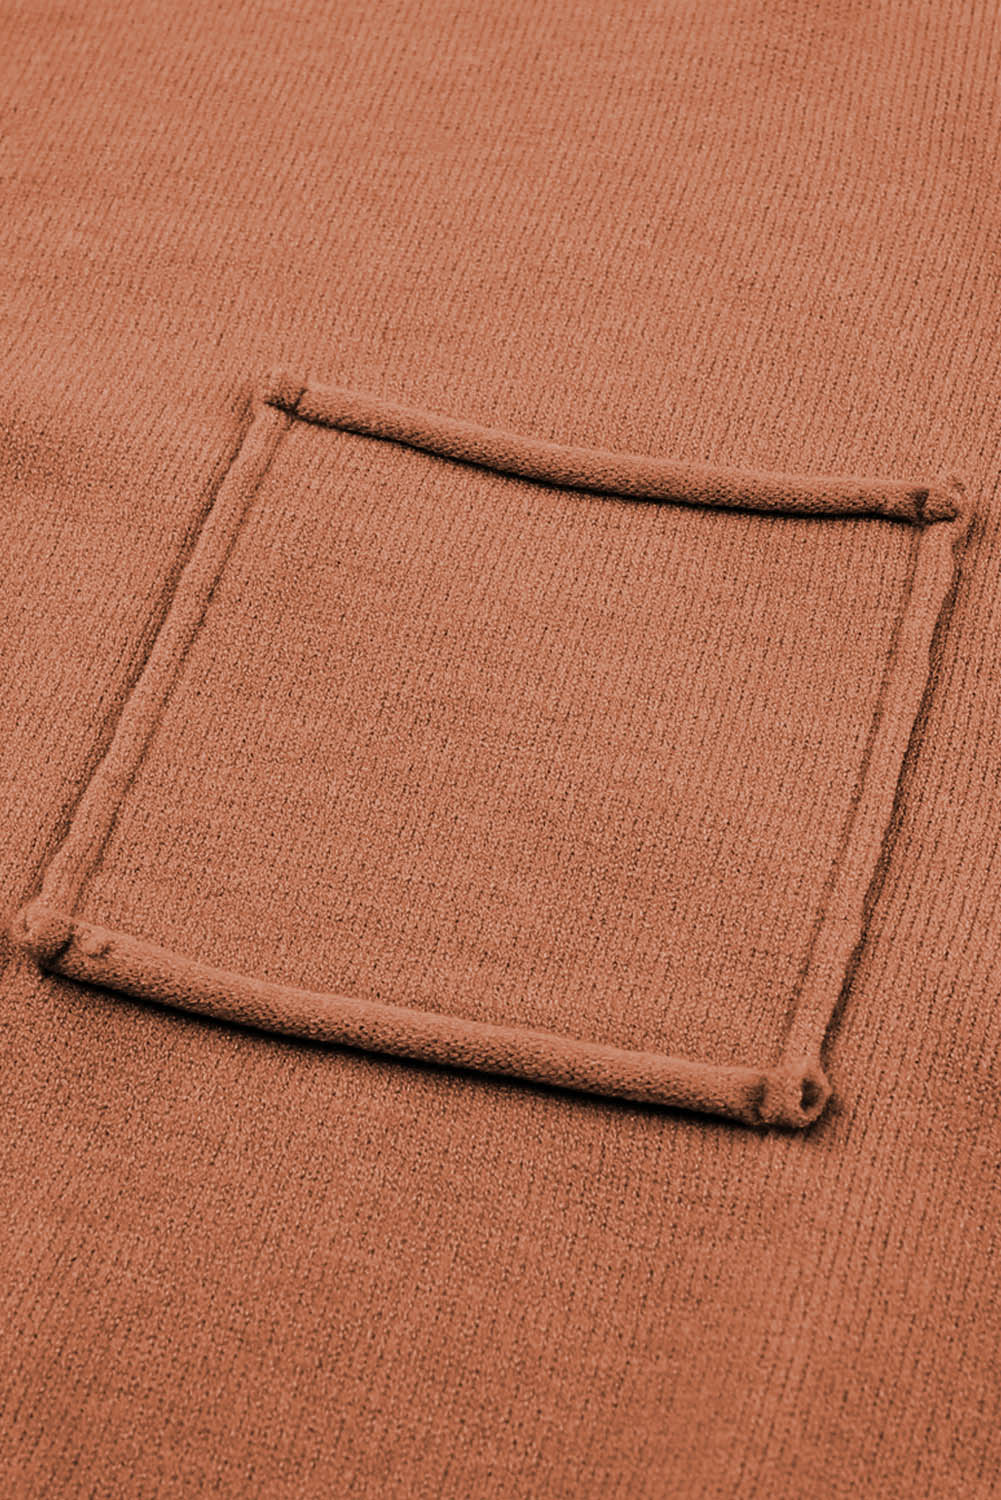 Orangefarbener, lockerer Pullover mit aufgesetzten Taschen und freiliegenden Nähten